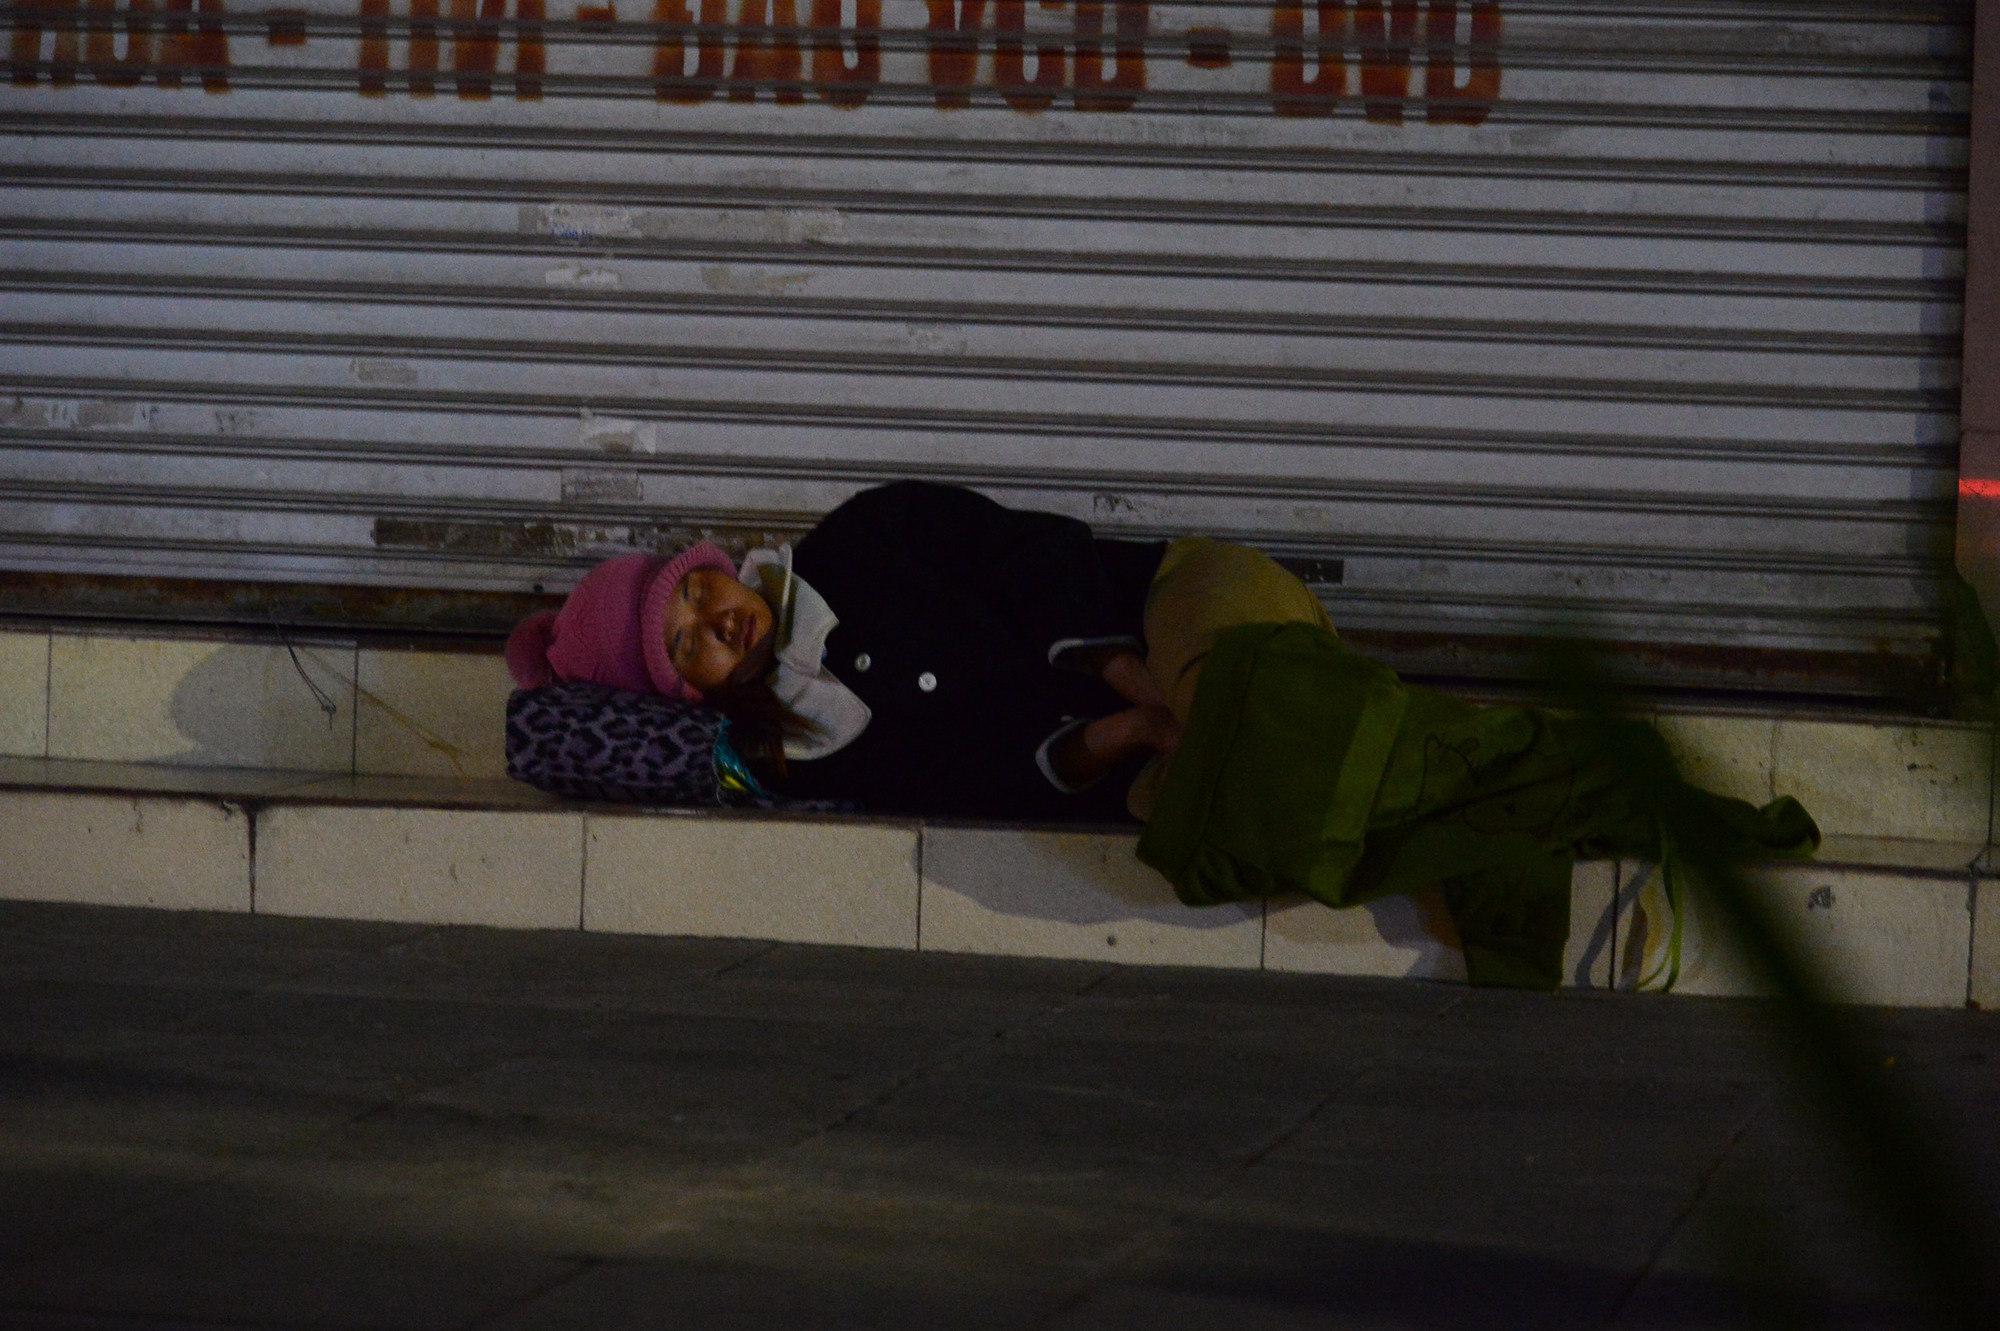 Người vô gia cư, lao động mưu sinh co ro ở vỉa hè Hà Nội trong rét buốt - Ảnh 10.